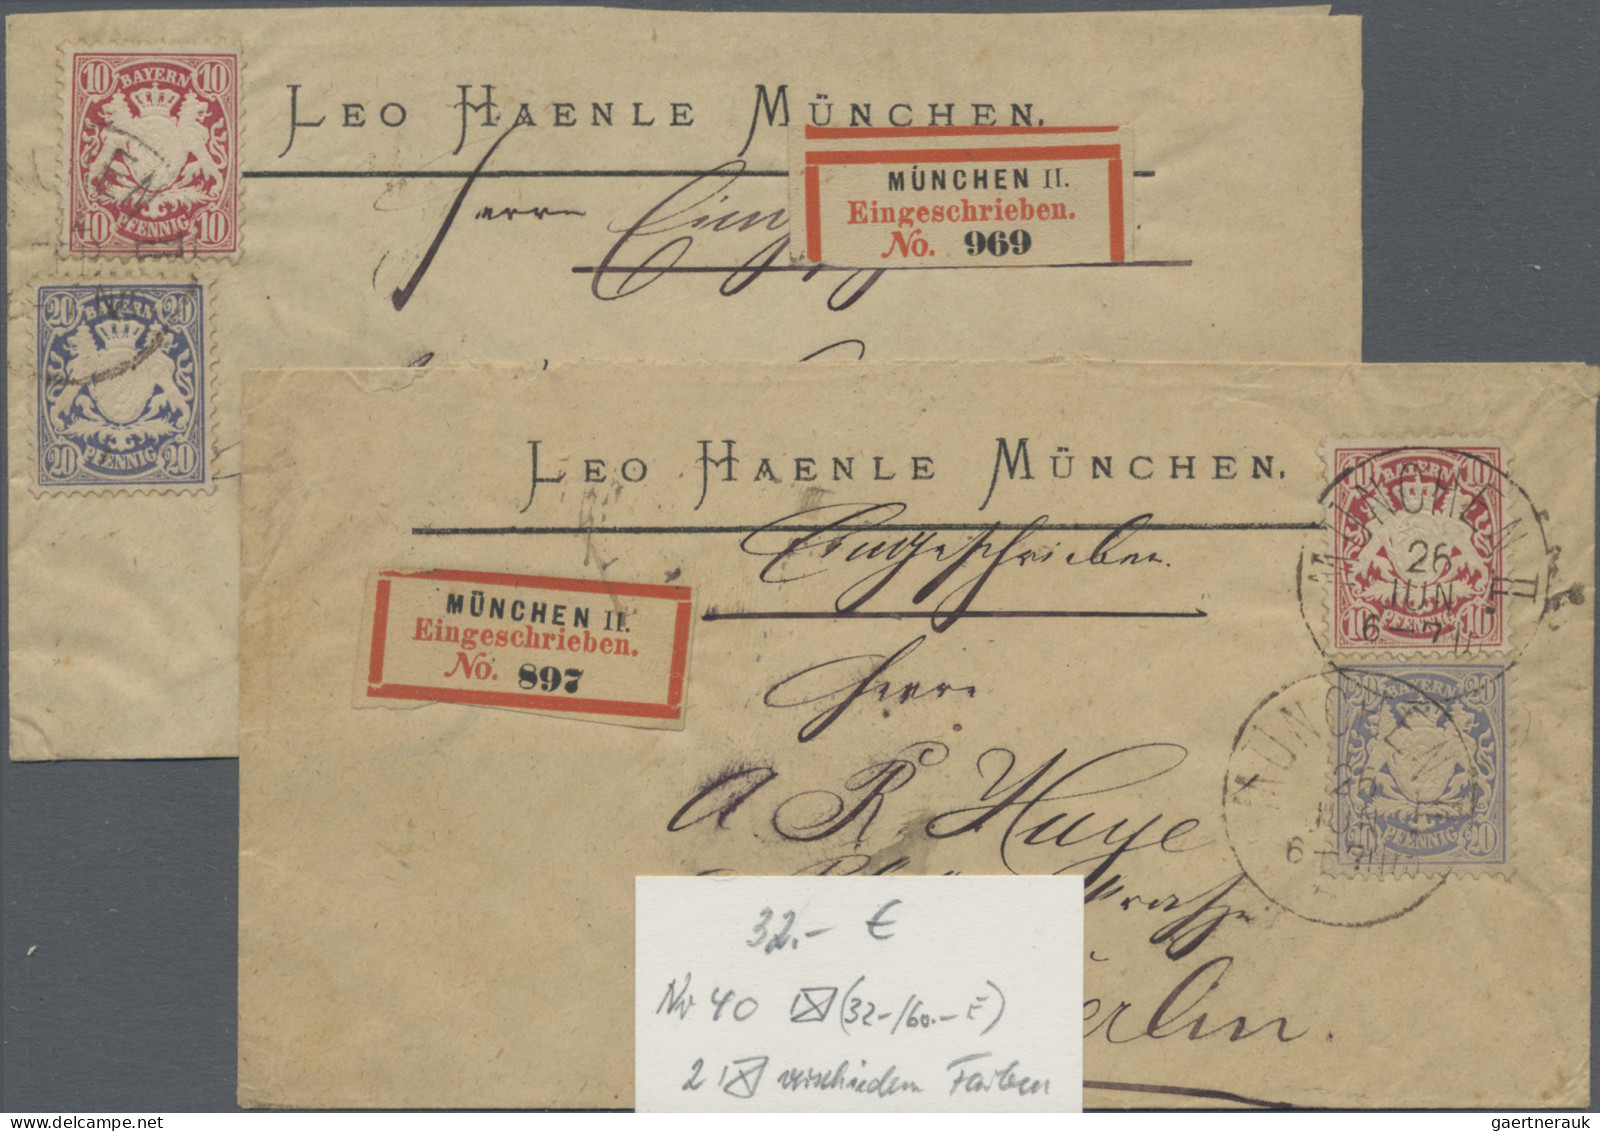 Bayern - Marken und Briefe: 1856/1916, saubere Partie von 15 ausgesuchten Belege